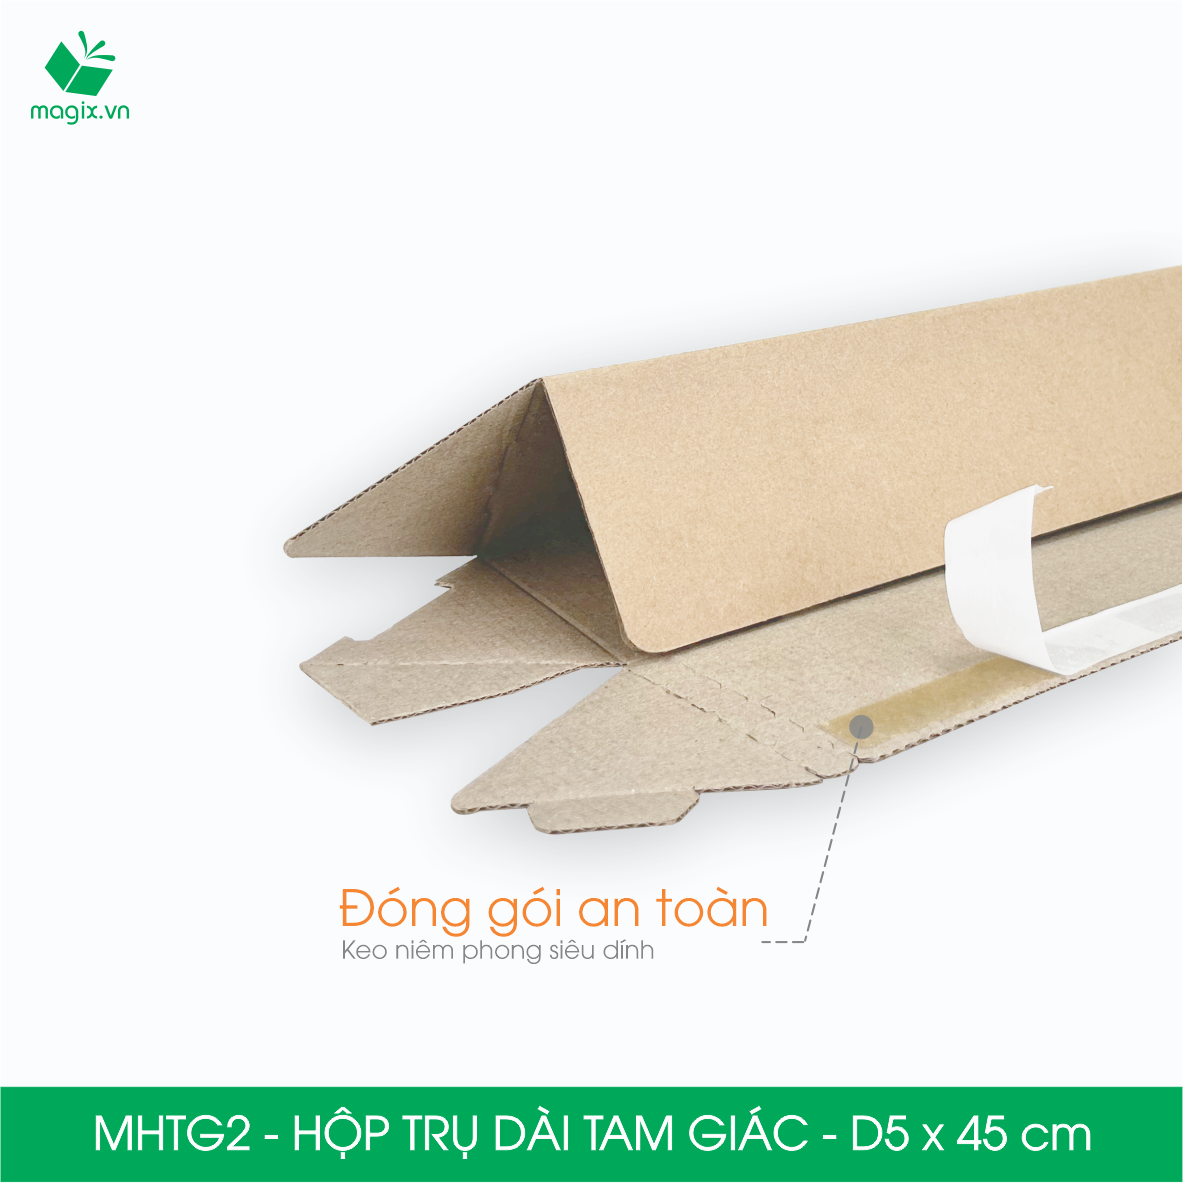 MHTG2 - D5x45 cm - 10 Hộp trụ dài tam giác thay thế ống giấy - Hộp carton đóng gói hàng